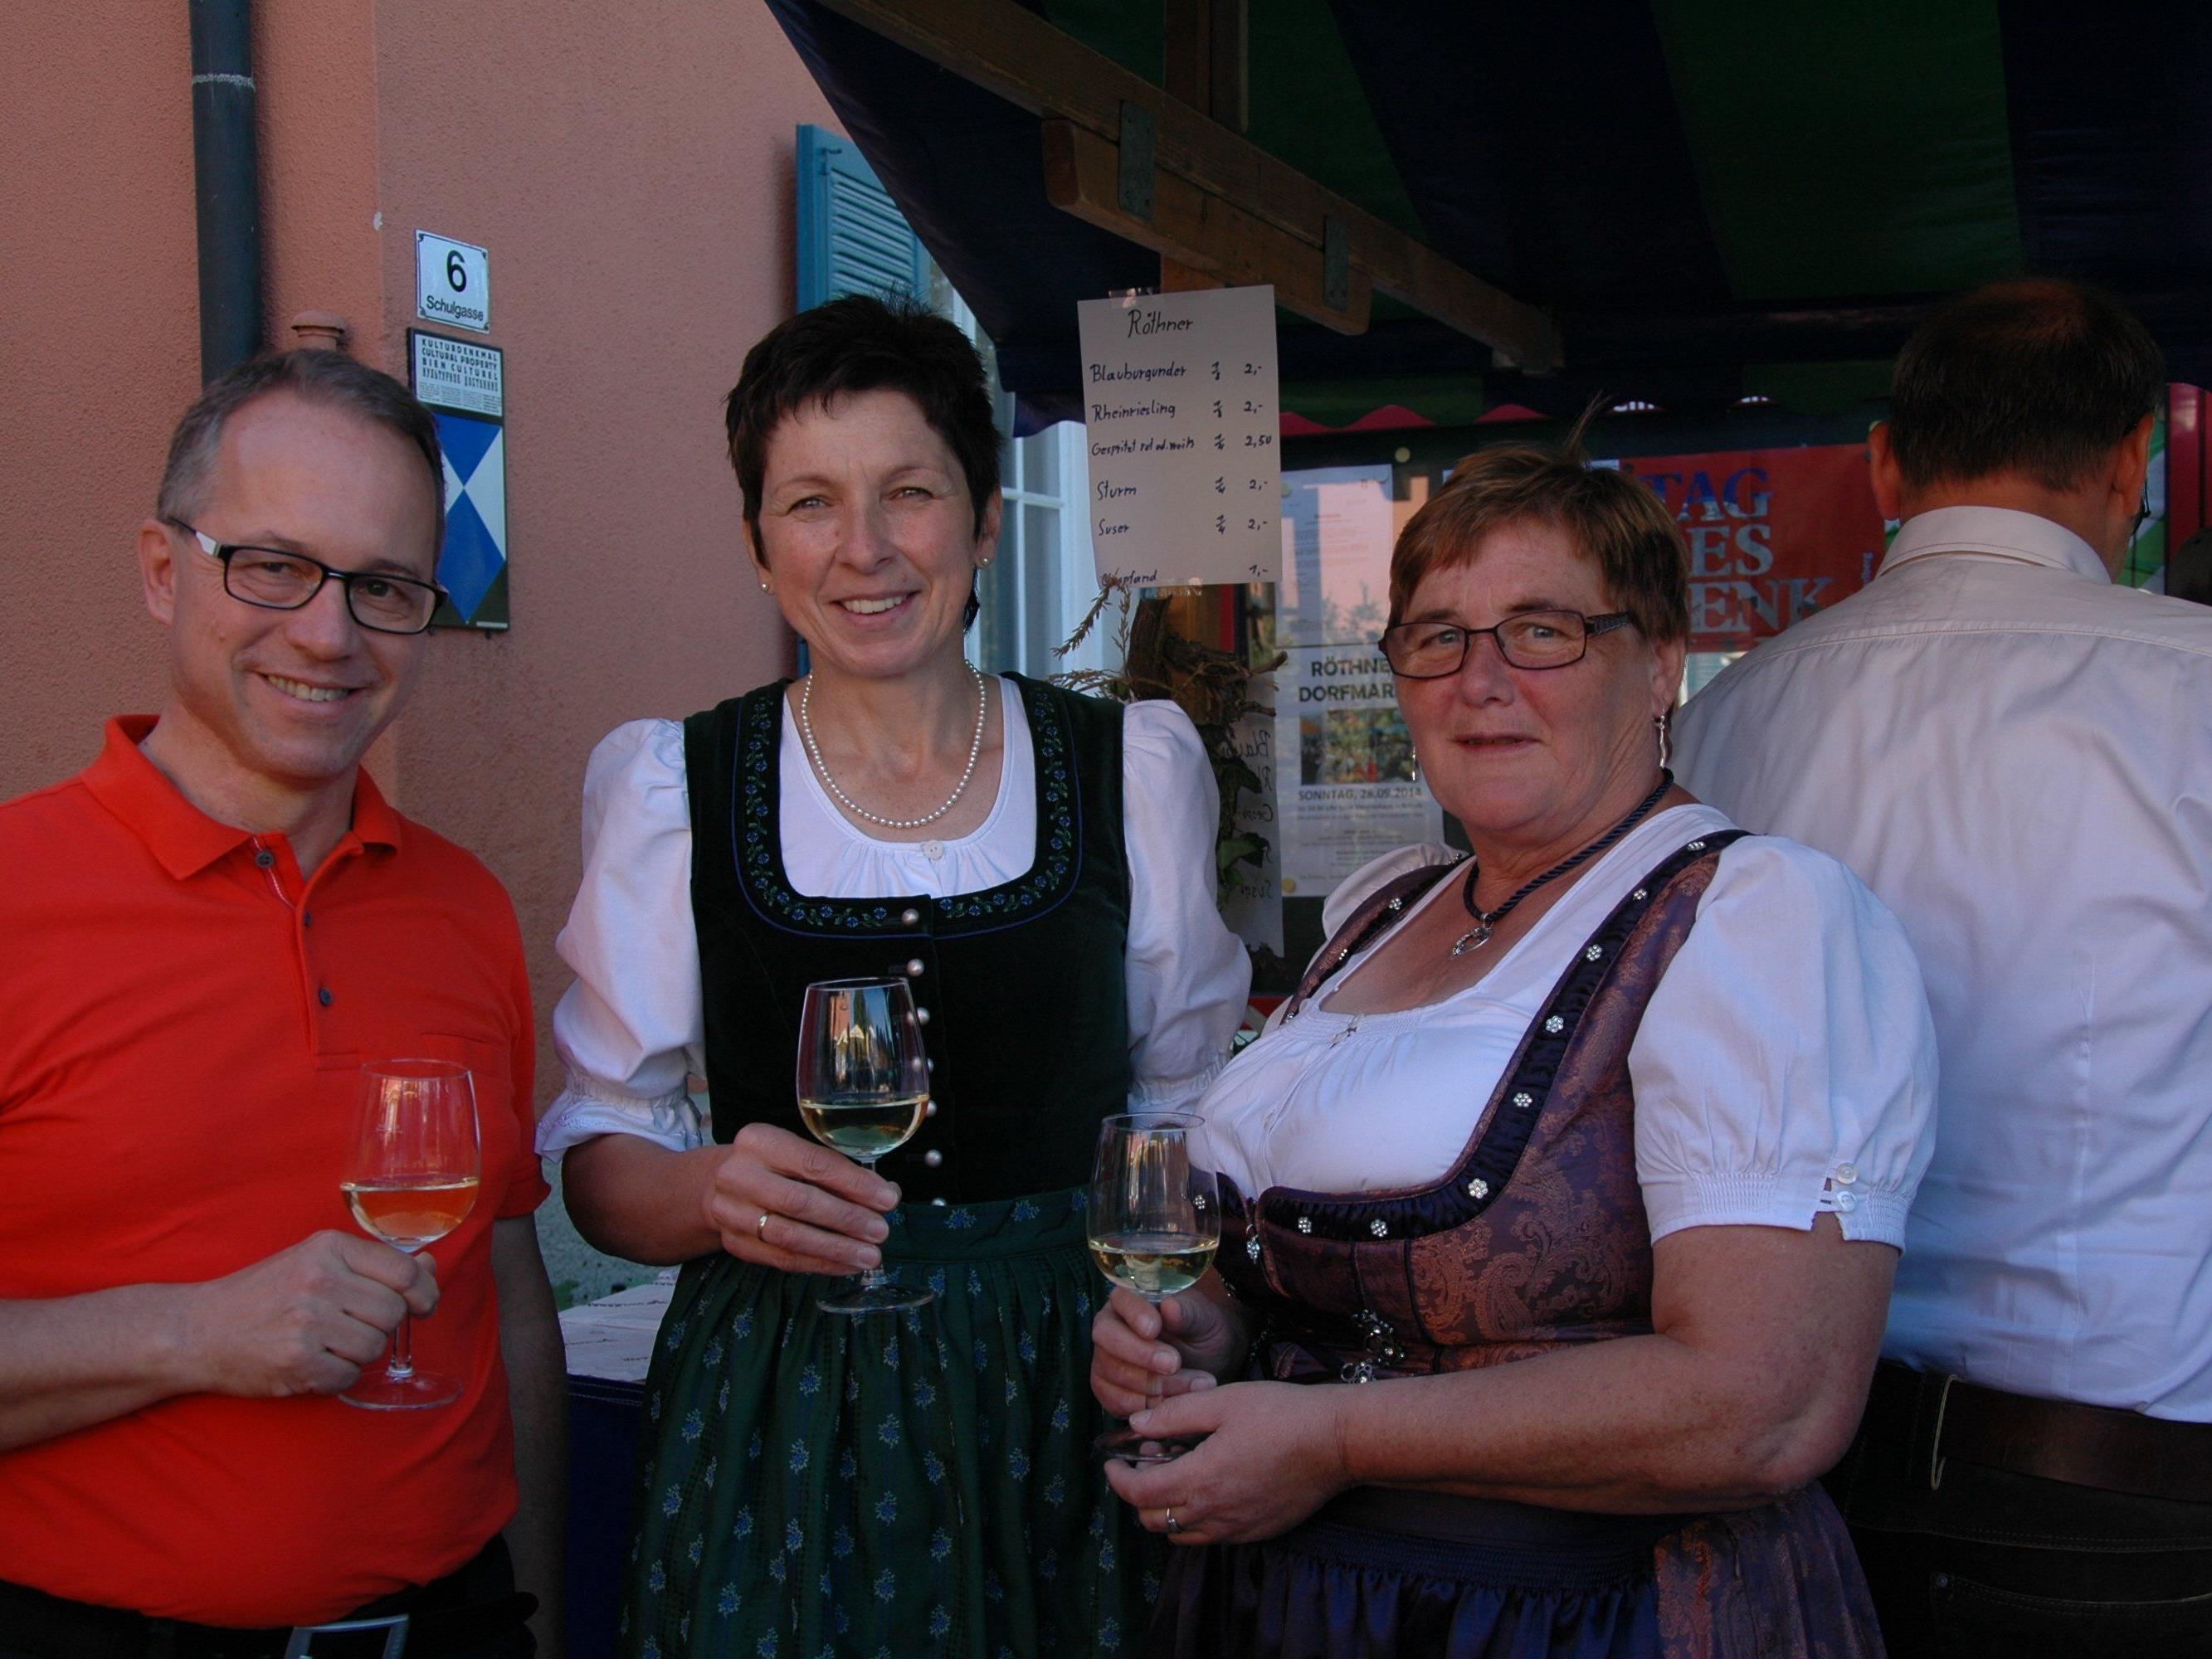 Bürgermeister Roman Kopf, bundesbäuerin Andrea Schwarzmann und Irene Biedermann stießen auf einen erfolgreichen Röthner Markt an.